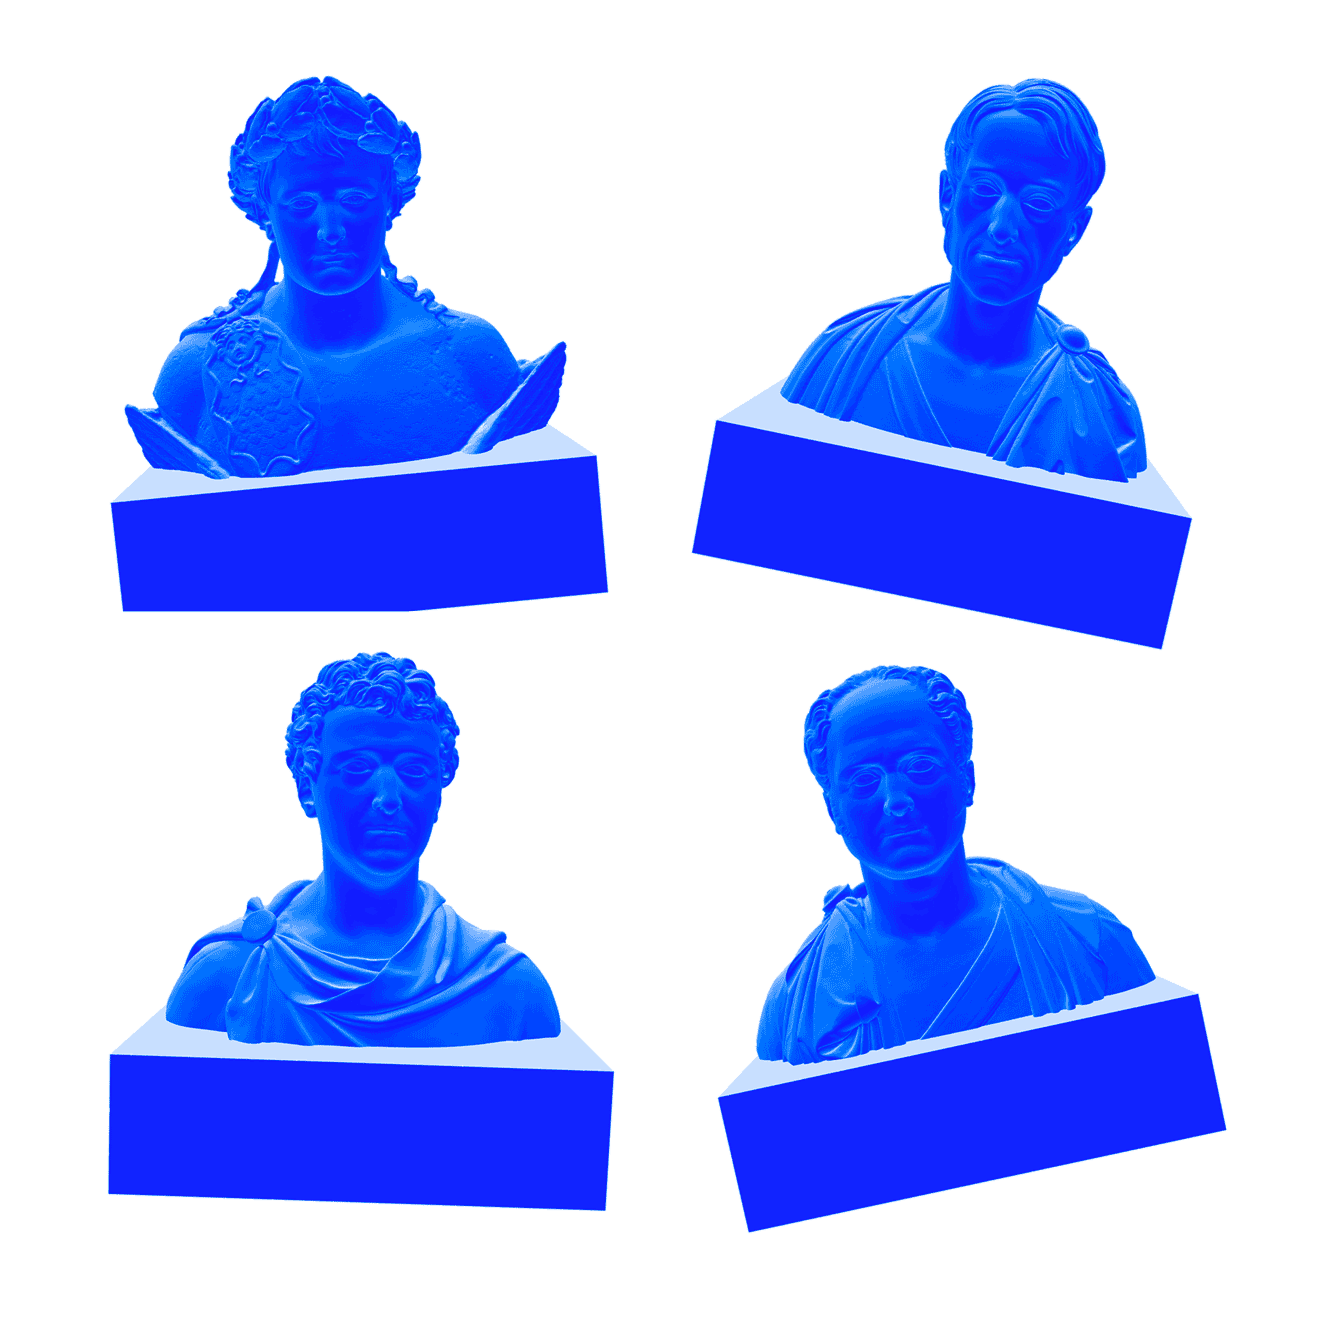 Alexander I , Napoleon Bonaparte, Frederik VI and Christian Frederik